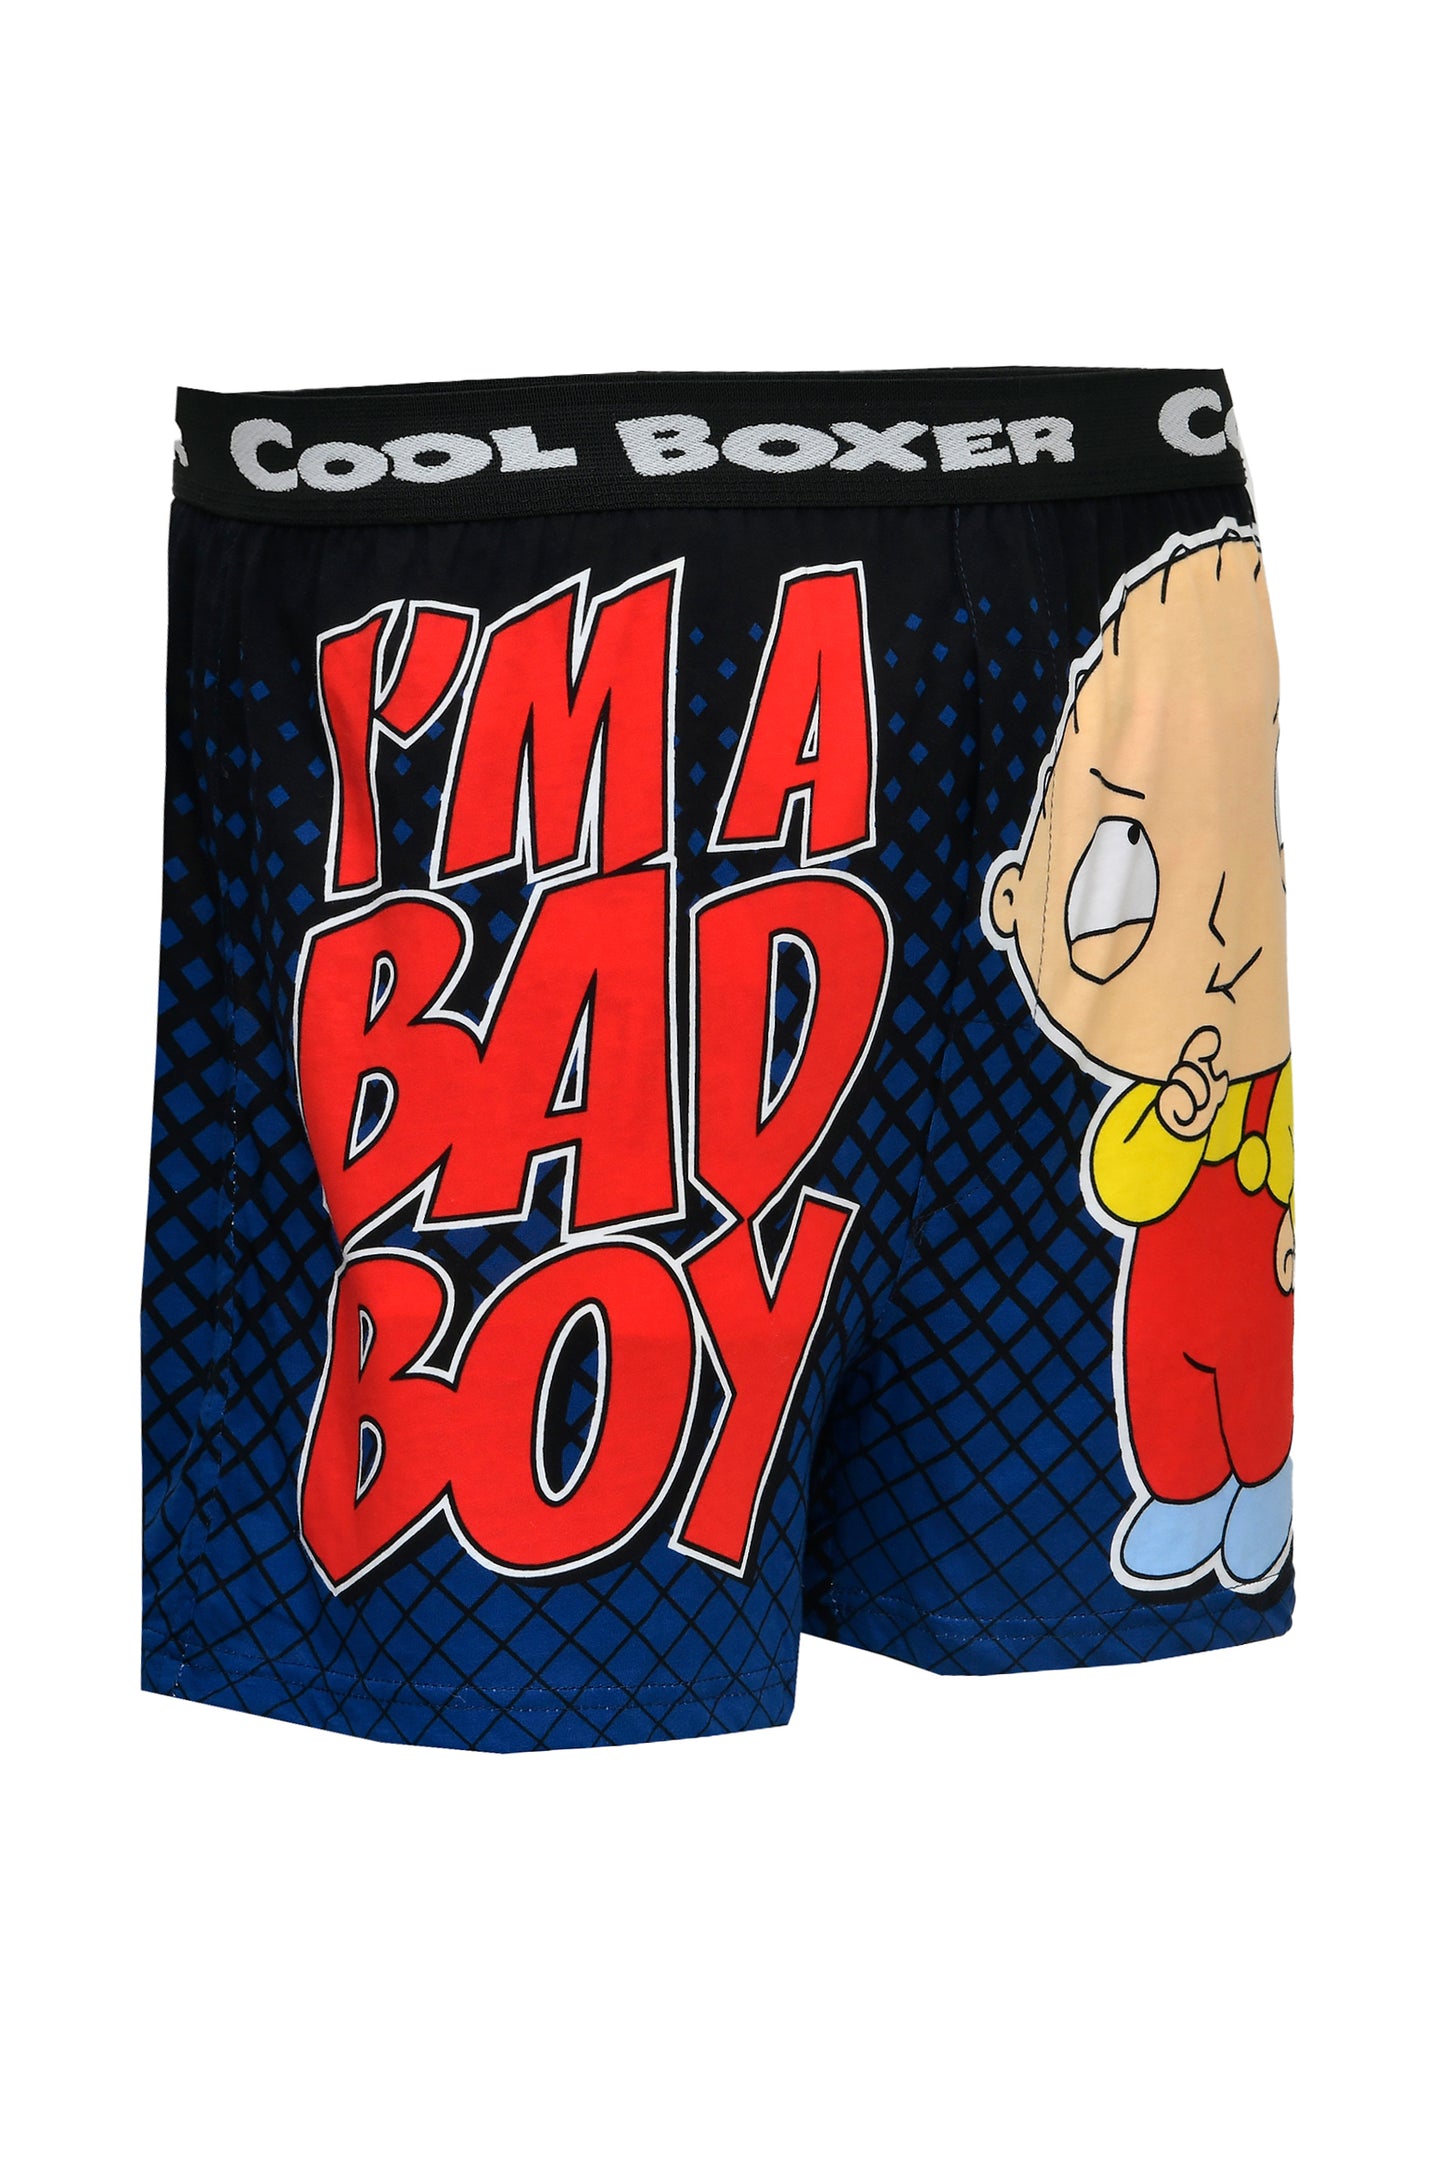 Men "I'M A BAD BOY" Cartoon Boxer